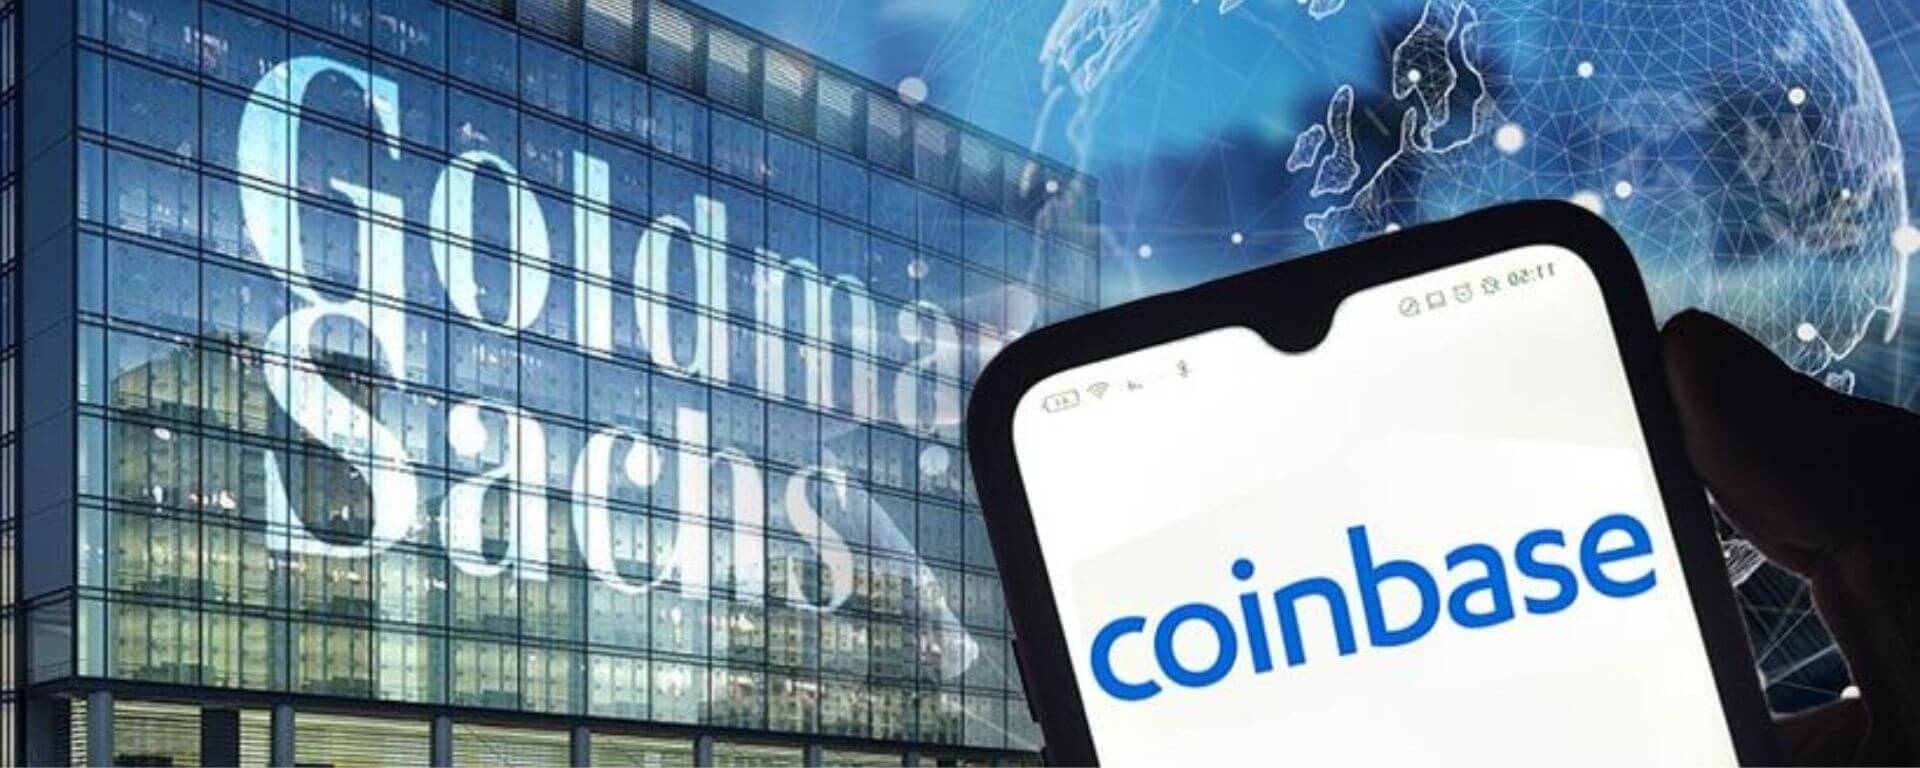 Goldman Sachs anunciou que a Coinbase foi a primeira empresa a receber empréstimo lastreado em Bitcoin, sem dar mais detalhes do acordo